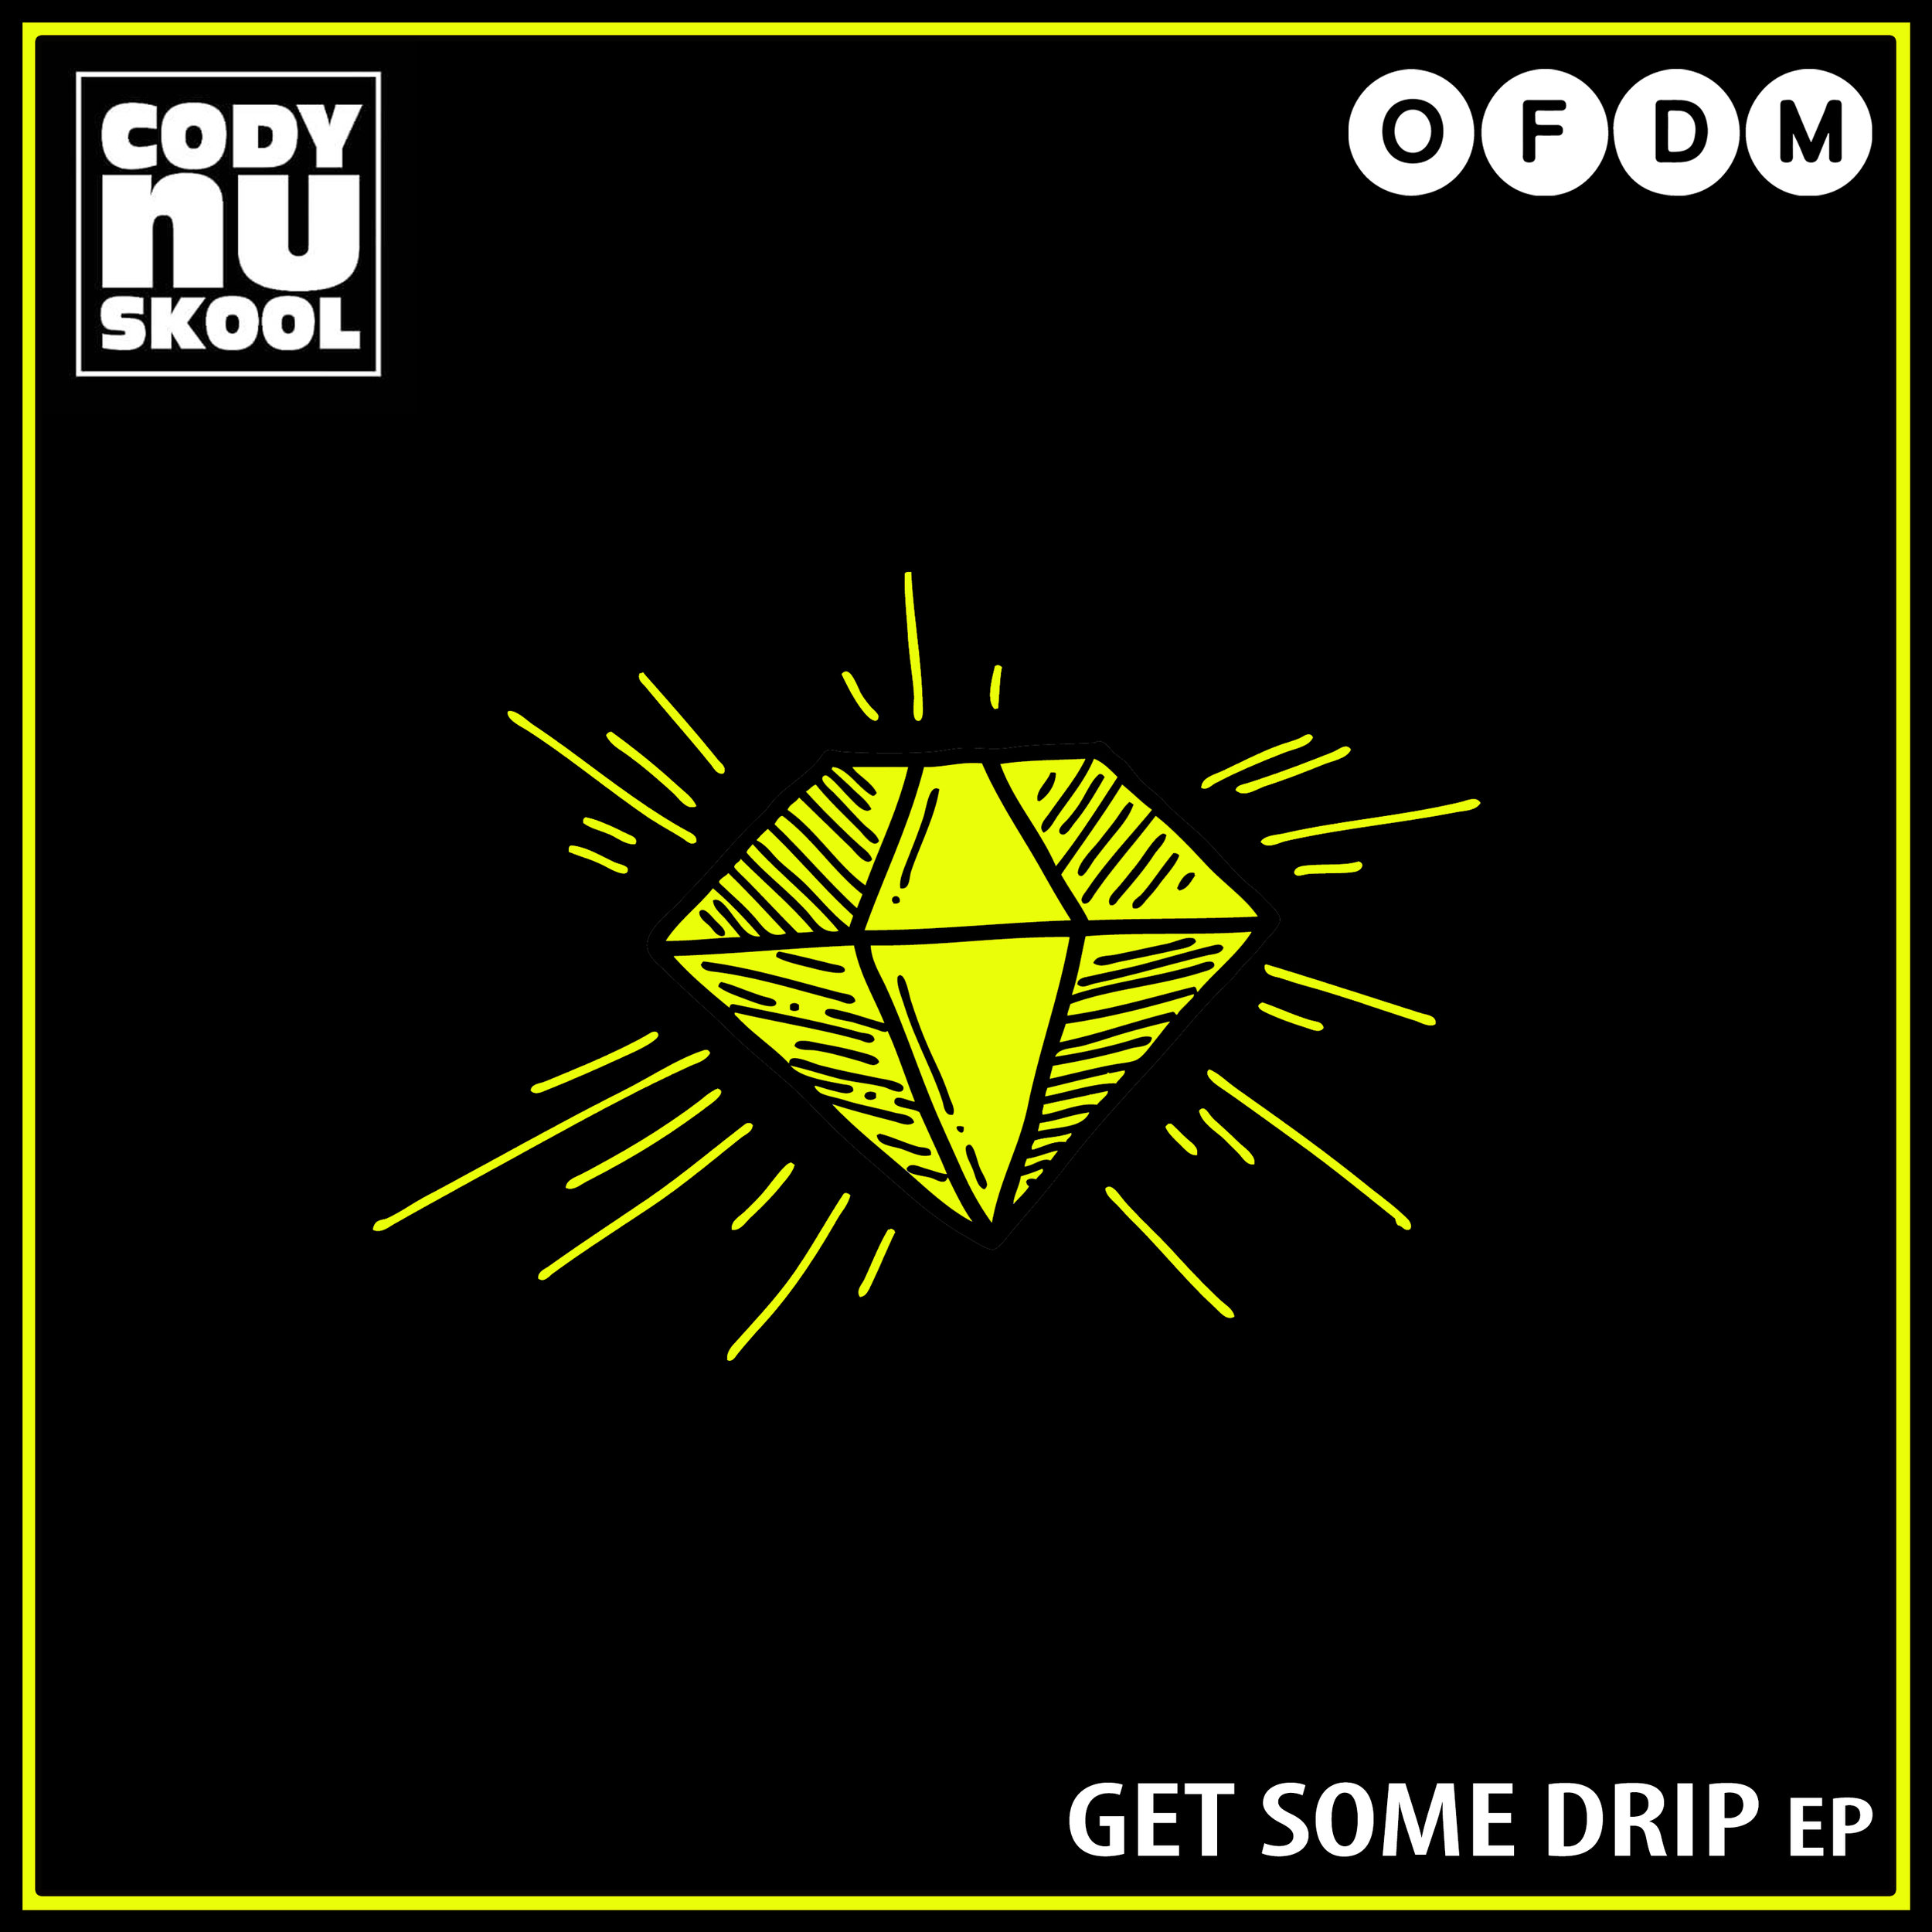 [OFDM032] Cody Nu Skool - Get Some Drip EP.jpg